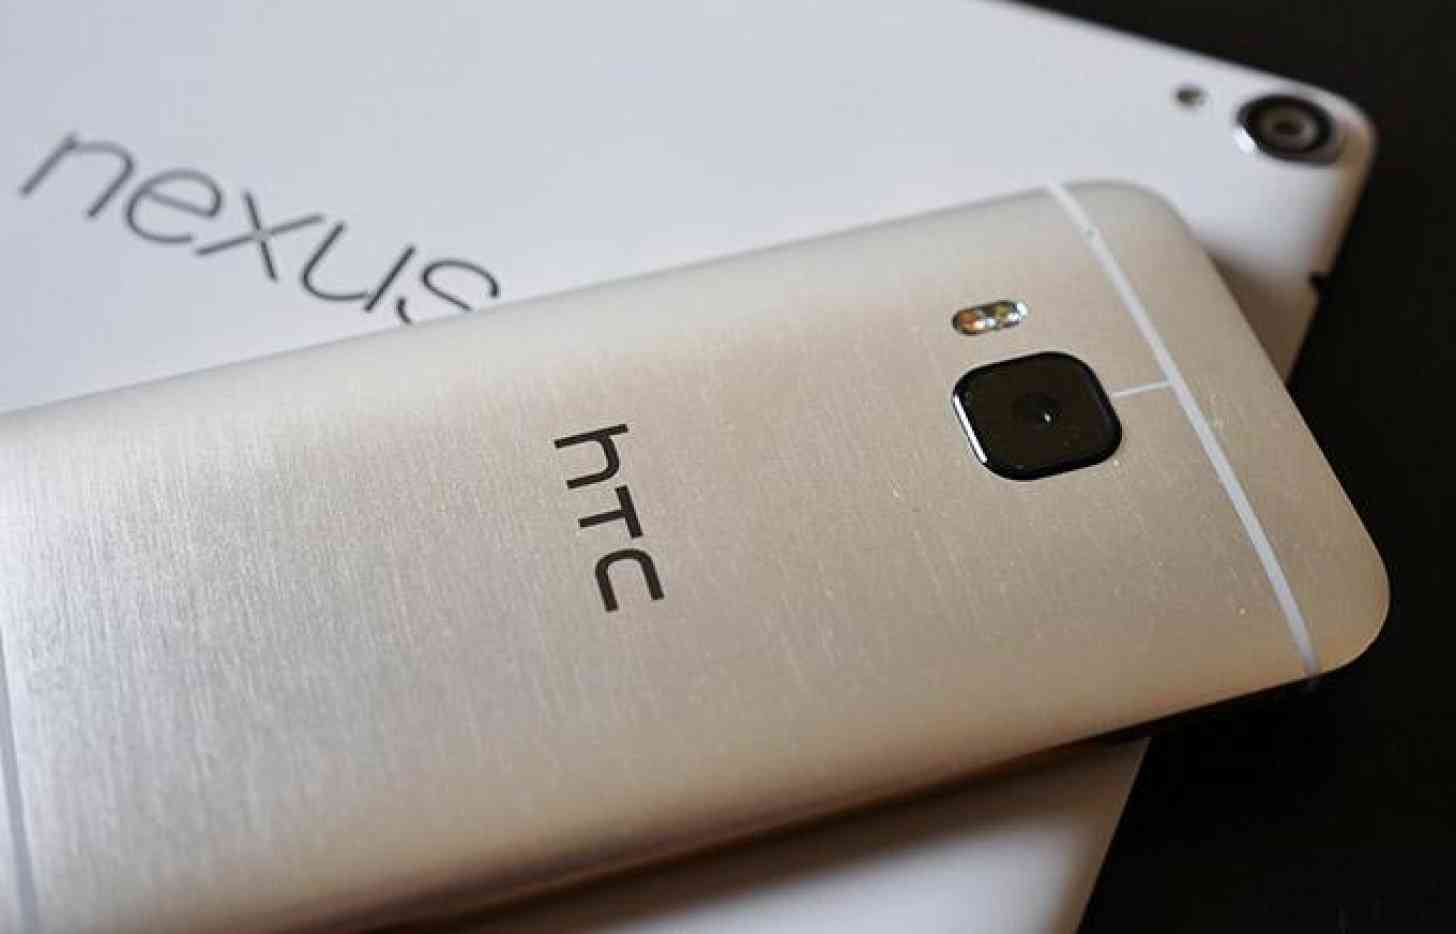 HTC One M9 and Nexus